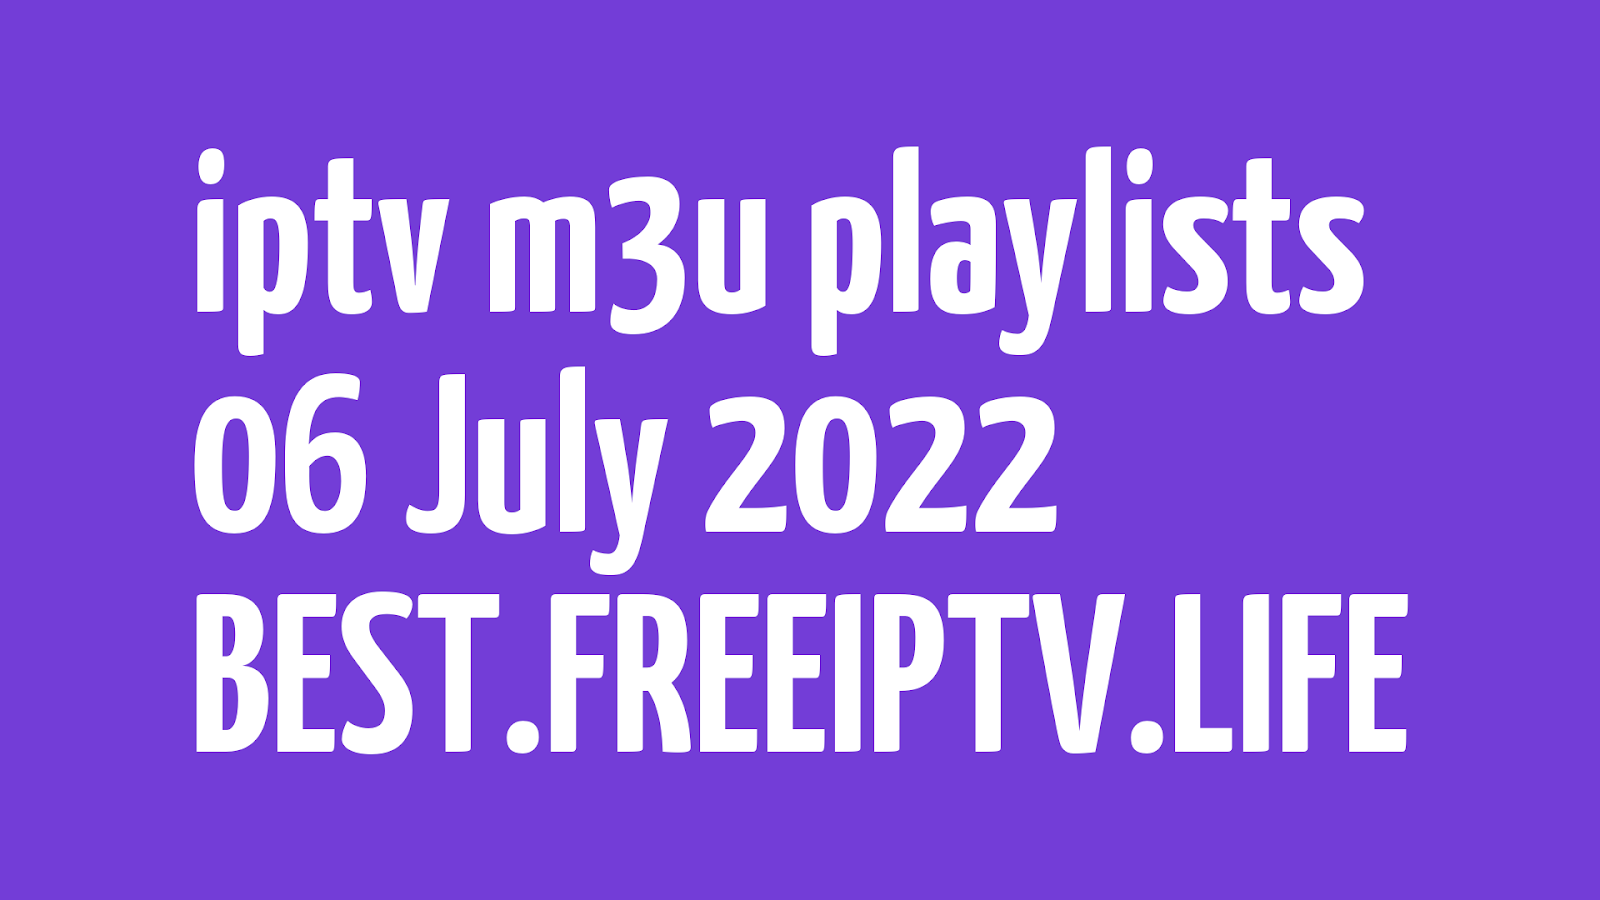 FREE IPTV LINKS DAILY M3U PLAYLISTS (BEST 81 URLS) 06 JULY 2022